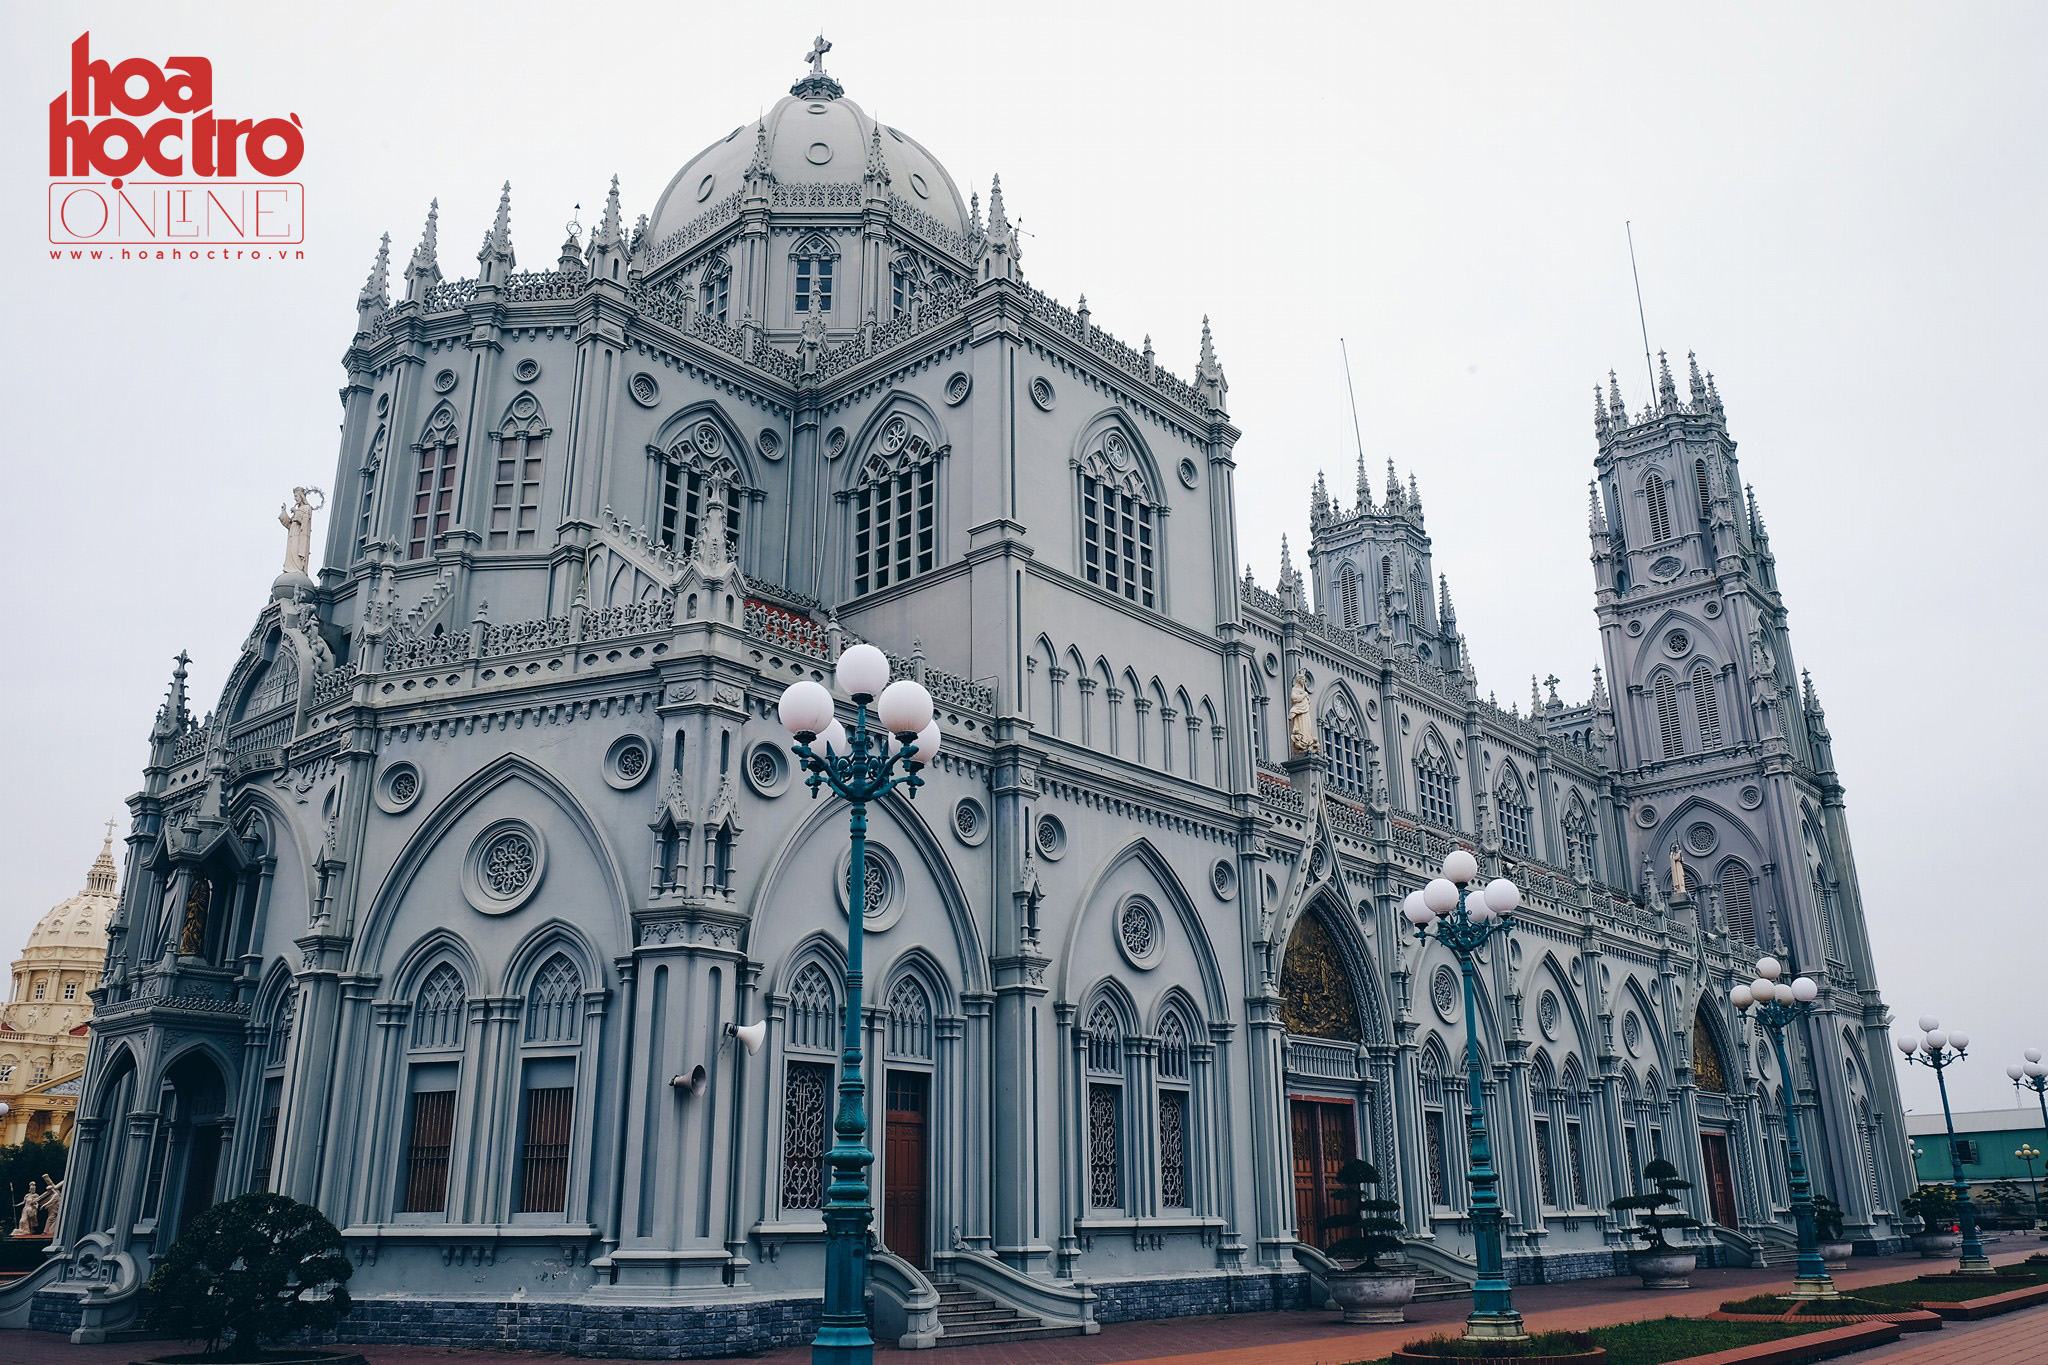 Tháng Ba này cùng ghé Nam Định thăm những nhà thờ đẹp hút hồn